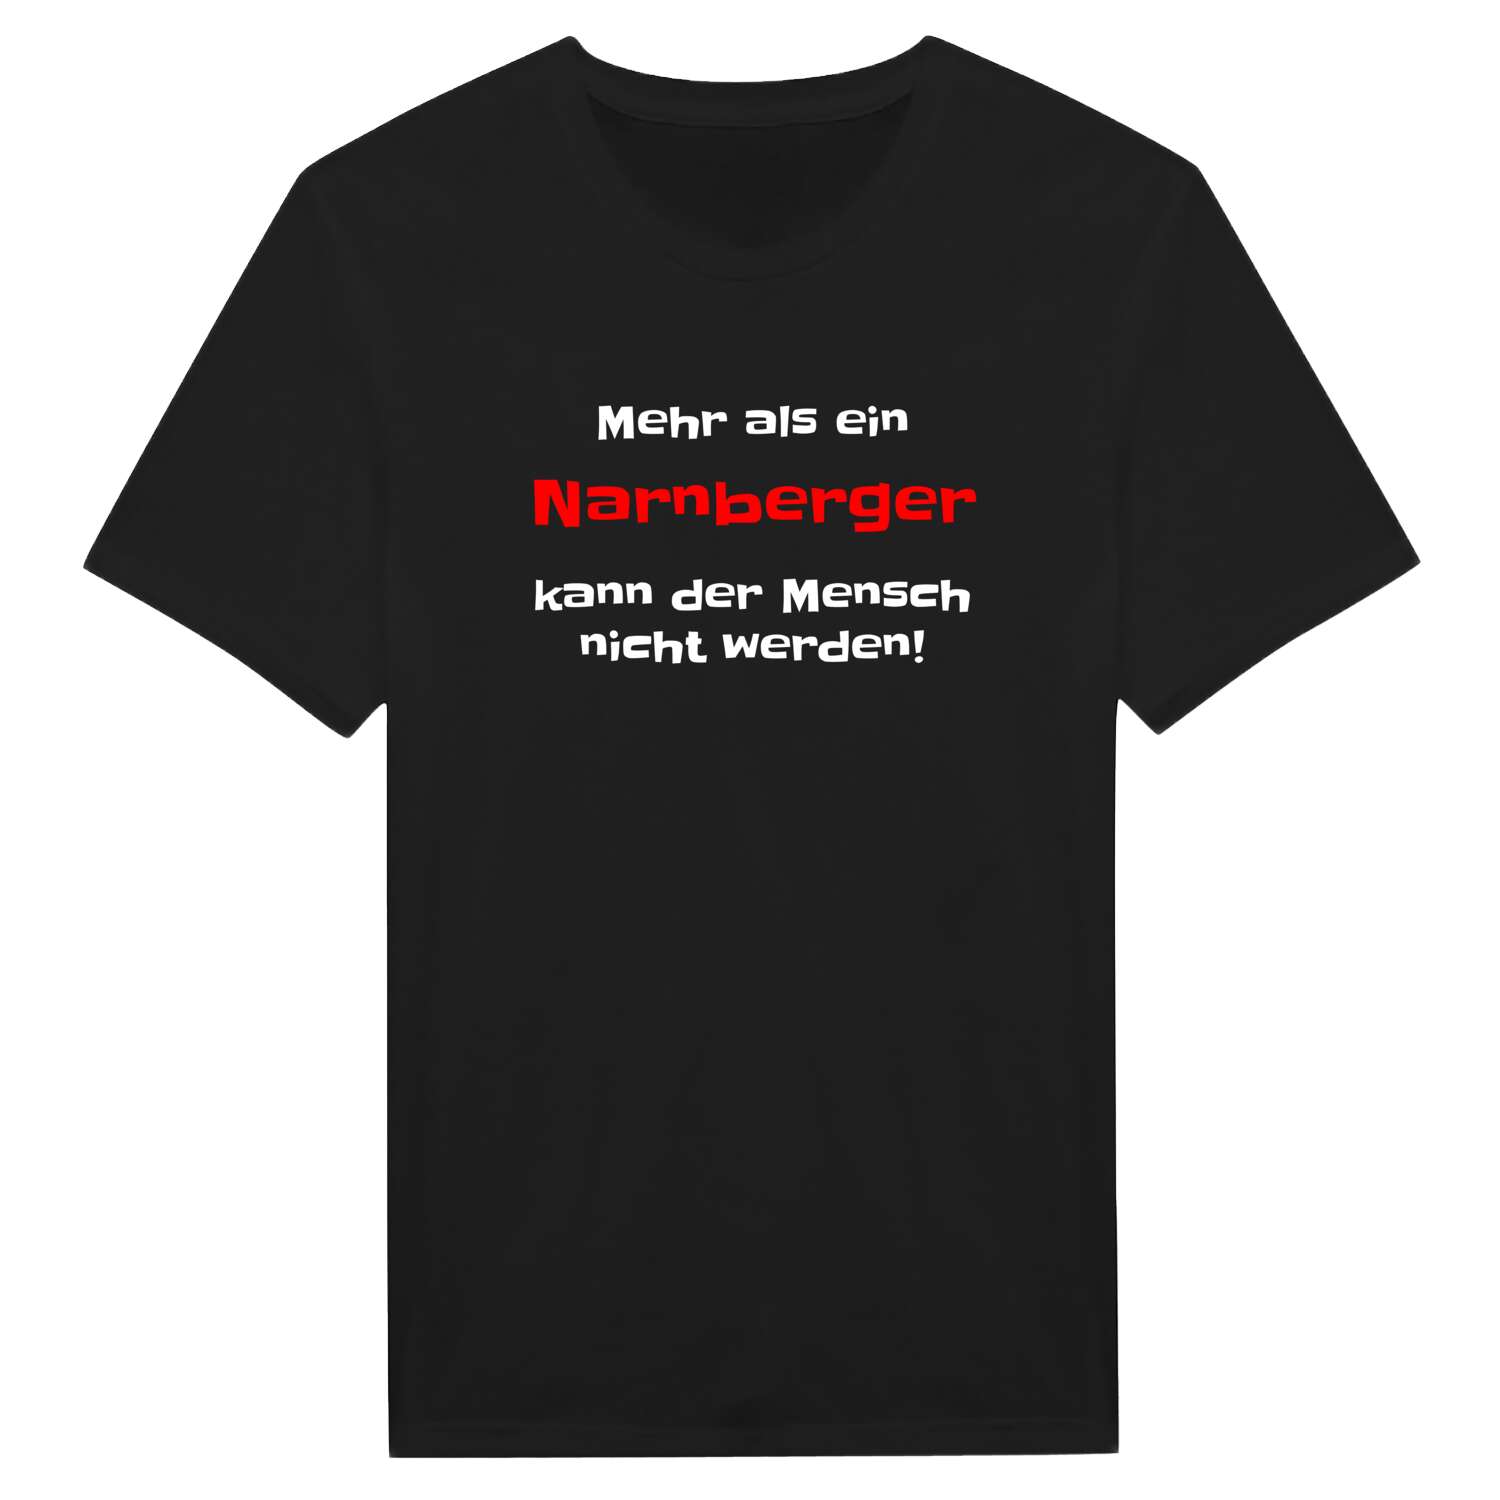 Narnberg T-Shirt »Mehr als ein«